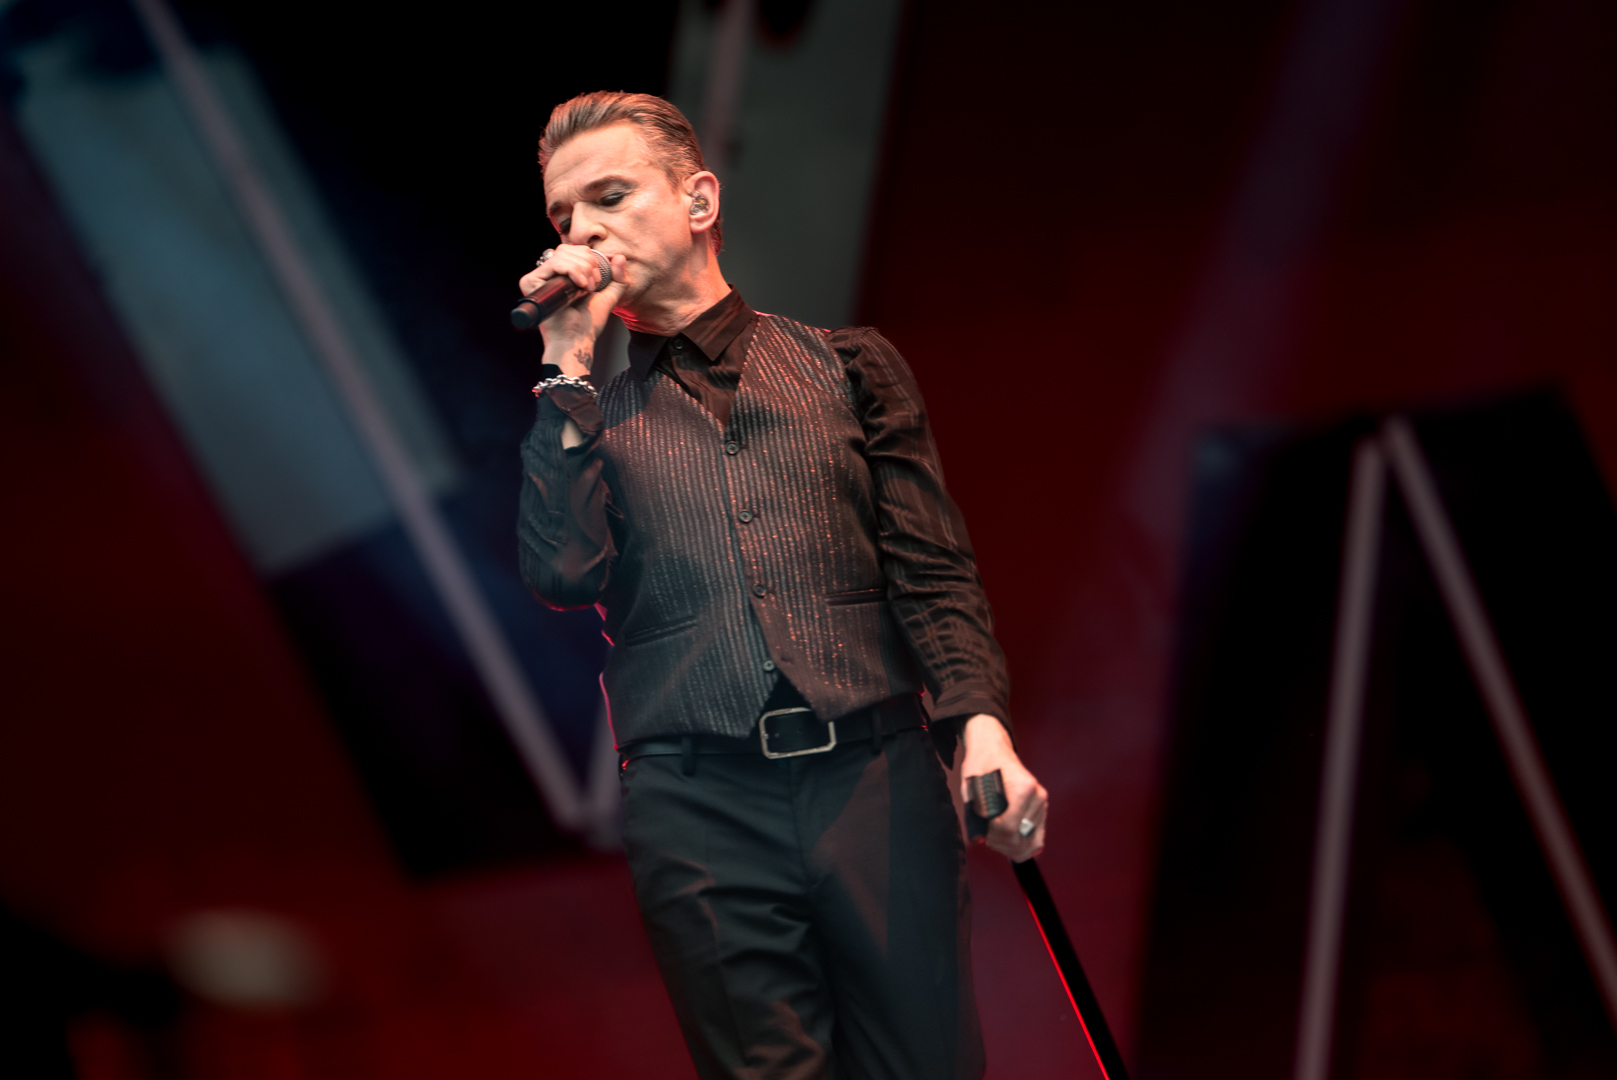 Depeche Mode @ Groupama Stadium